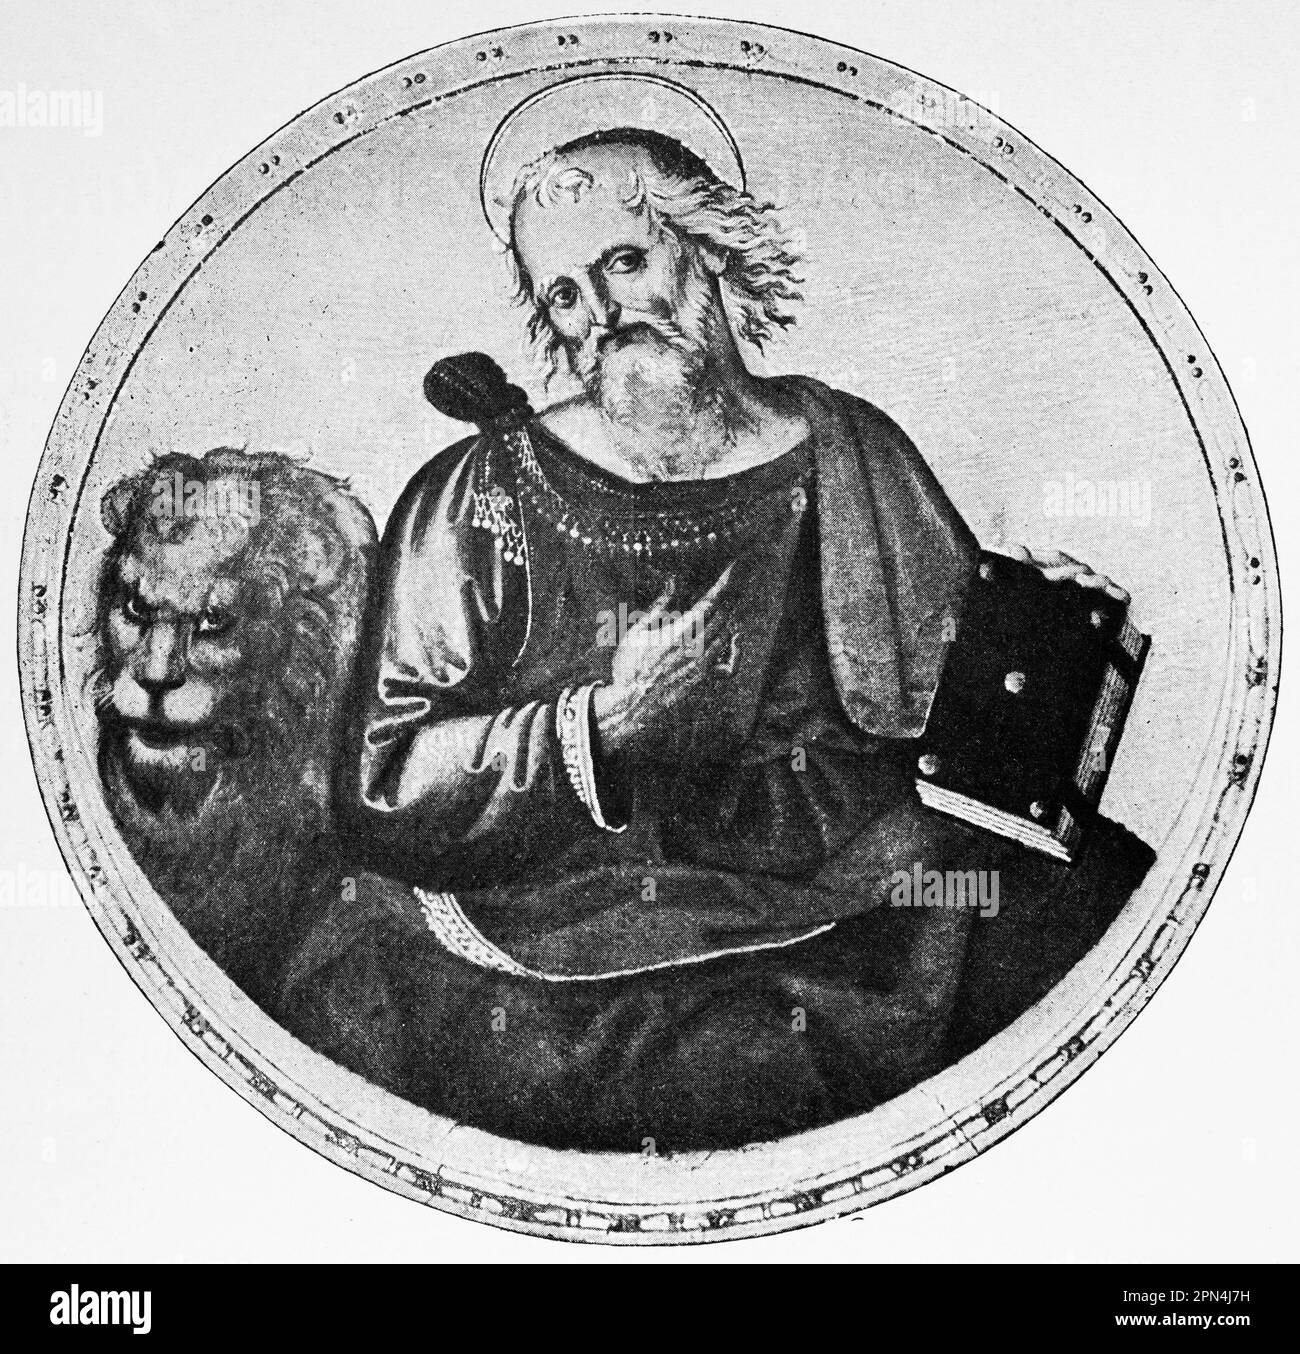 Portrait de l'évangéliste Markus, Mark l'évangéliste, Bbble, Nouveau Testament, illustration historique 1890 Banque D'Images